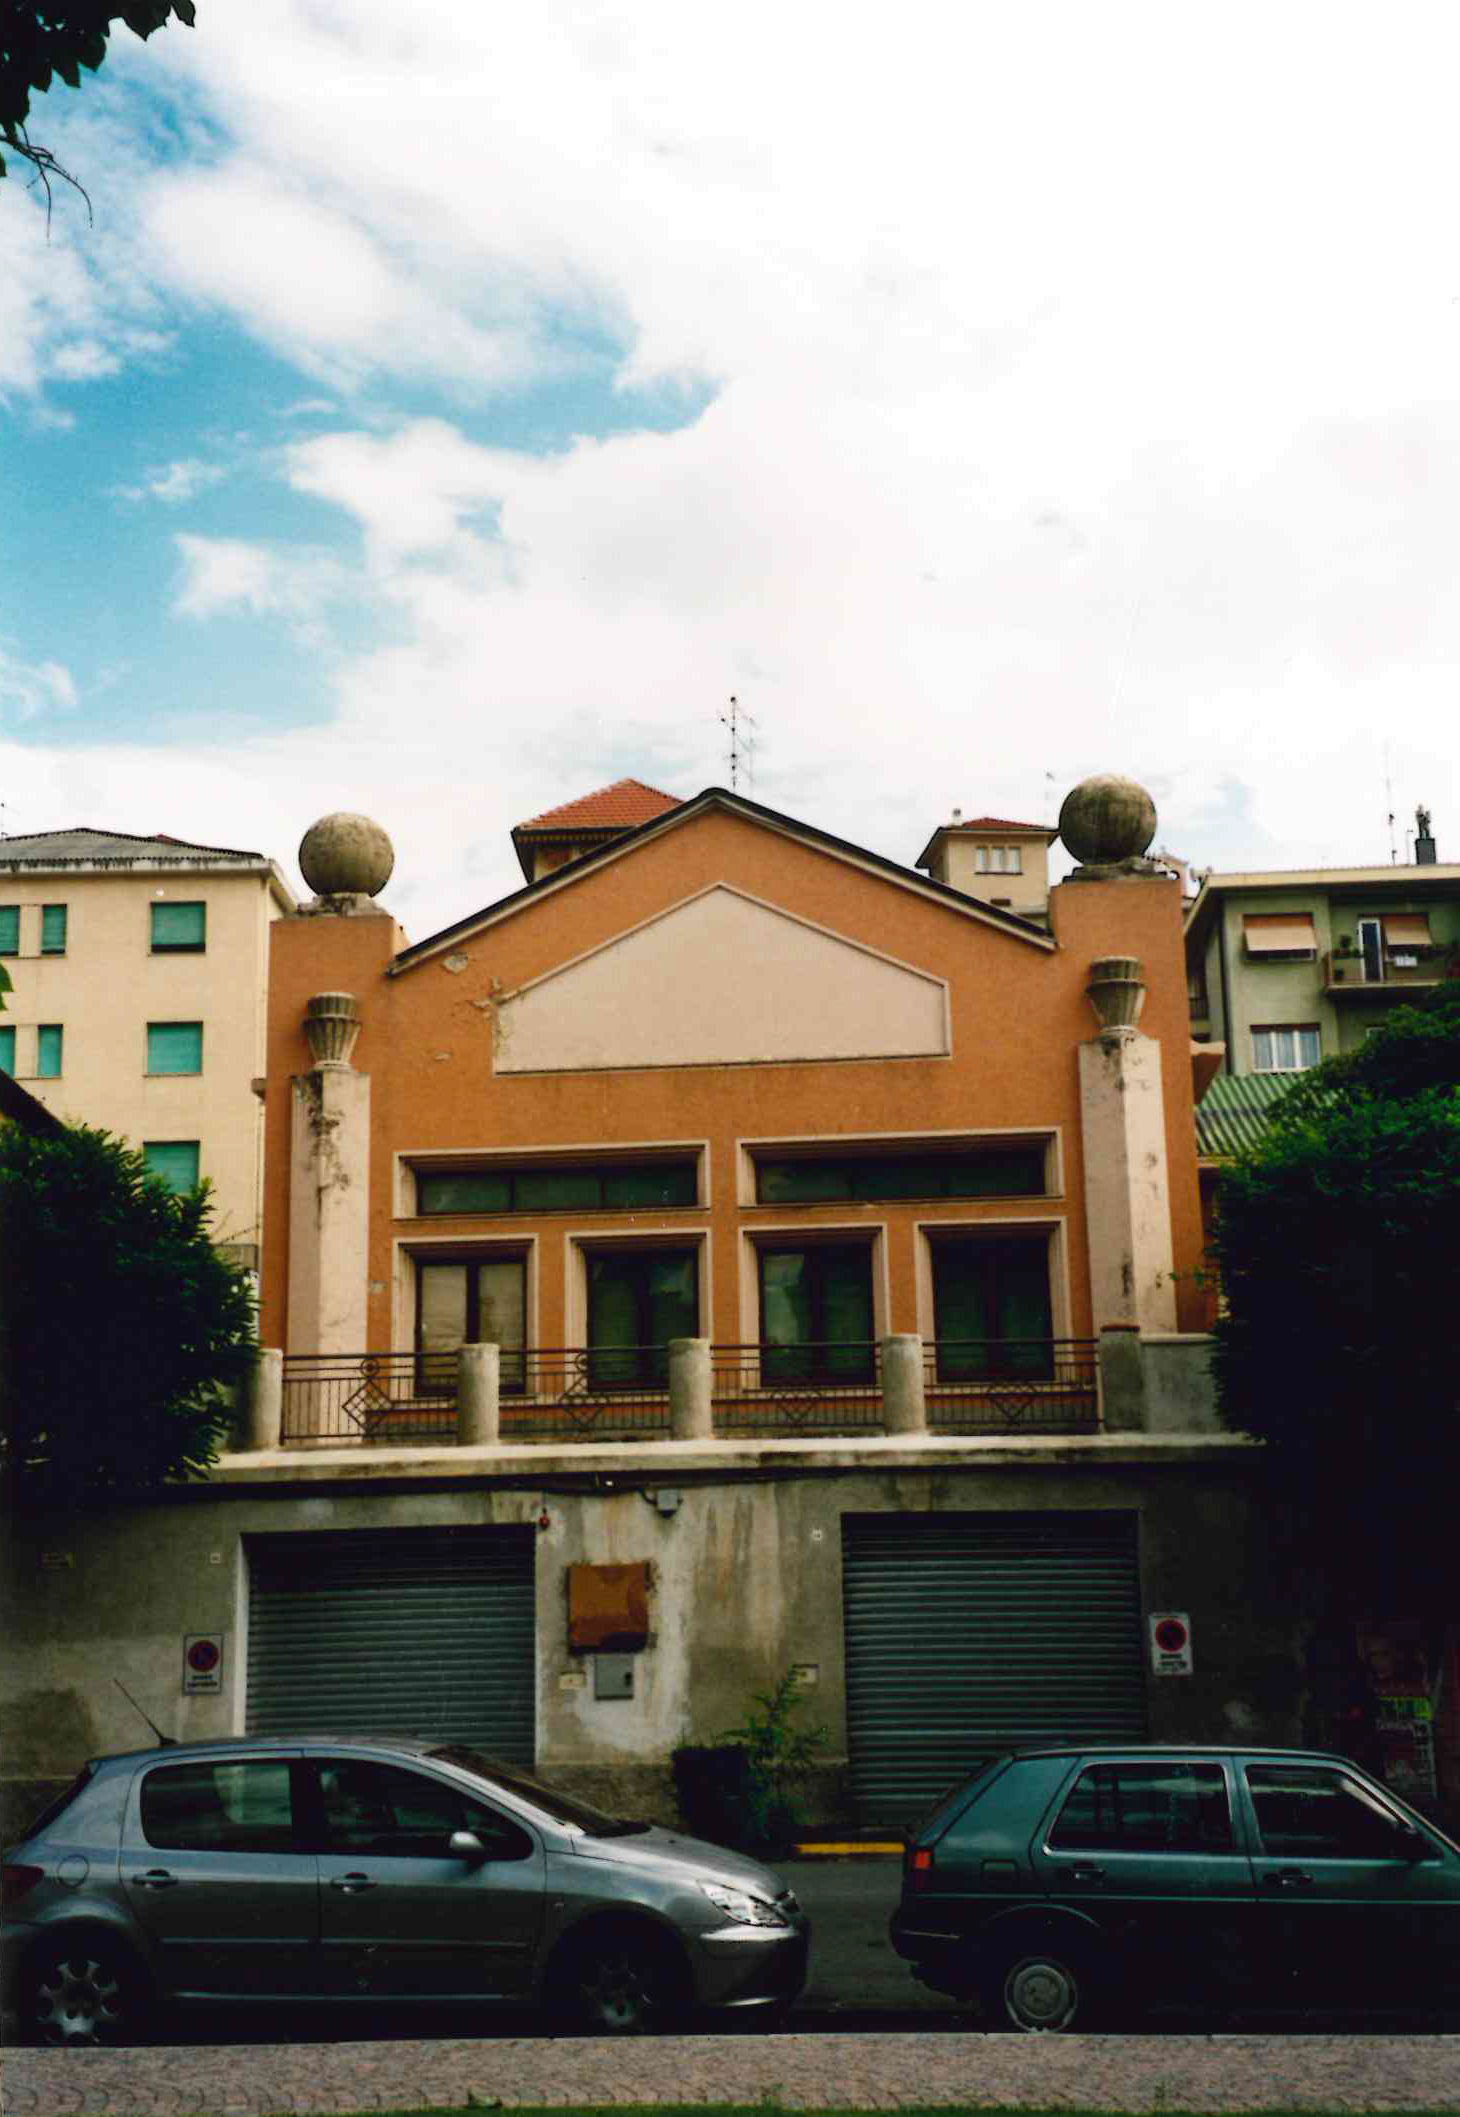 Asilo di Villapiana (asilo, pubblico) - Savona (SV)  (XX)